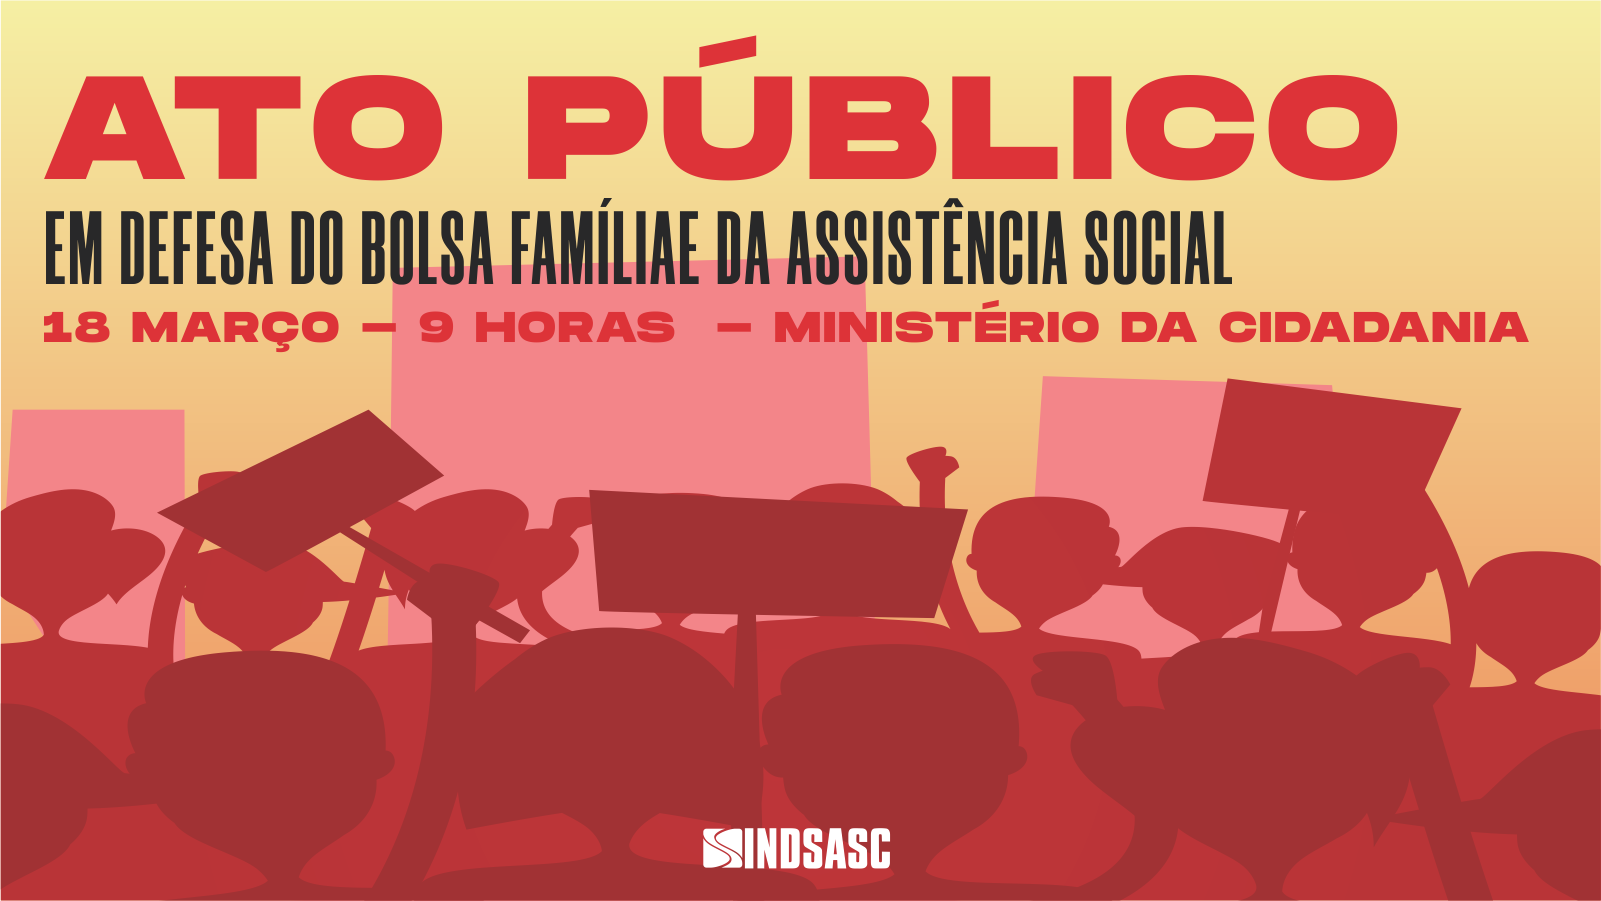 Reunião busca apoio para organização do Ato Público em Defesa do Bolsa Família